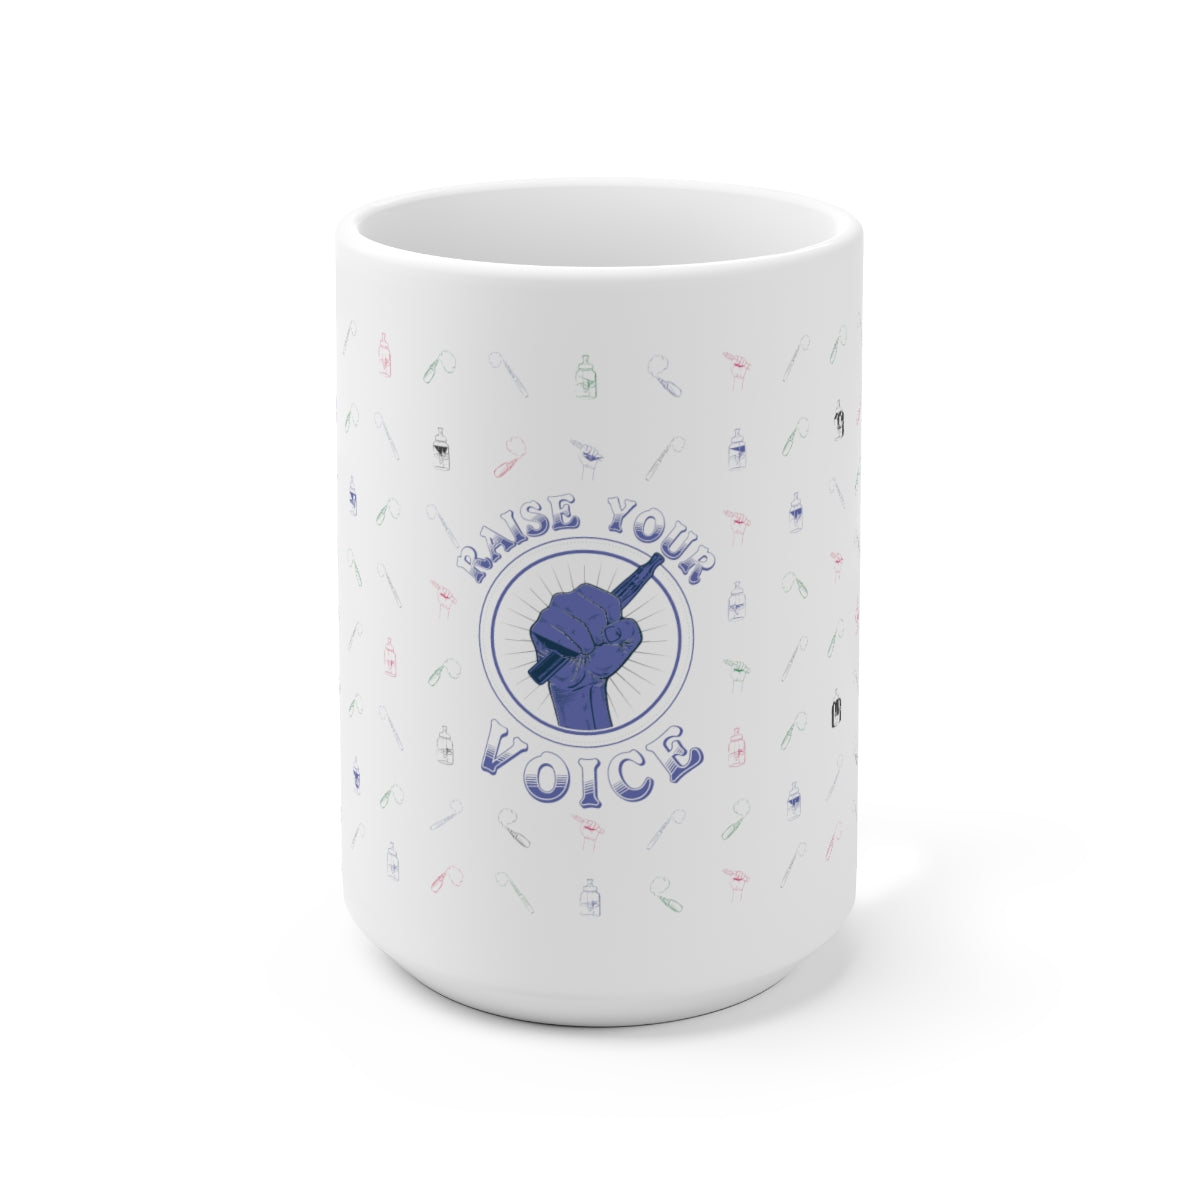 WVA Raise Your Voice Ceramic Mug 15oz (US Only)